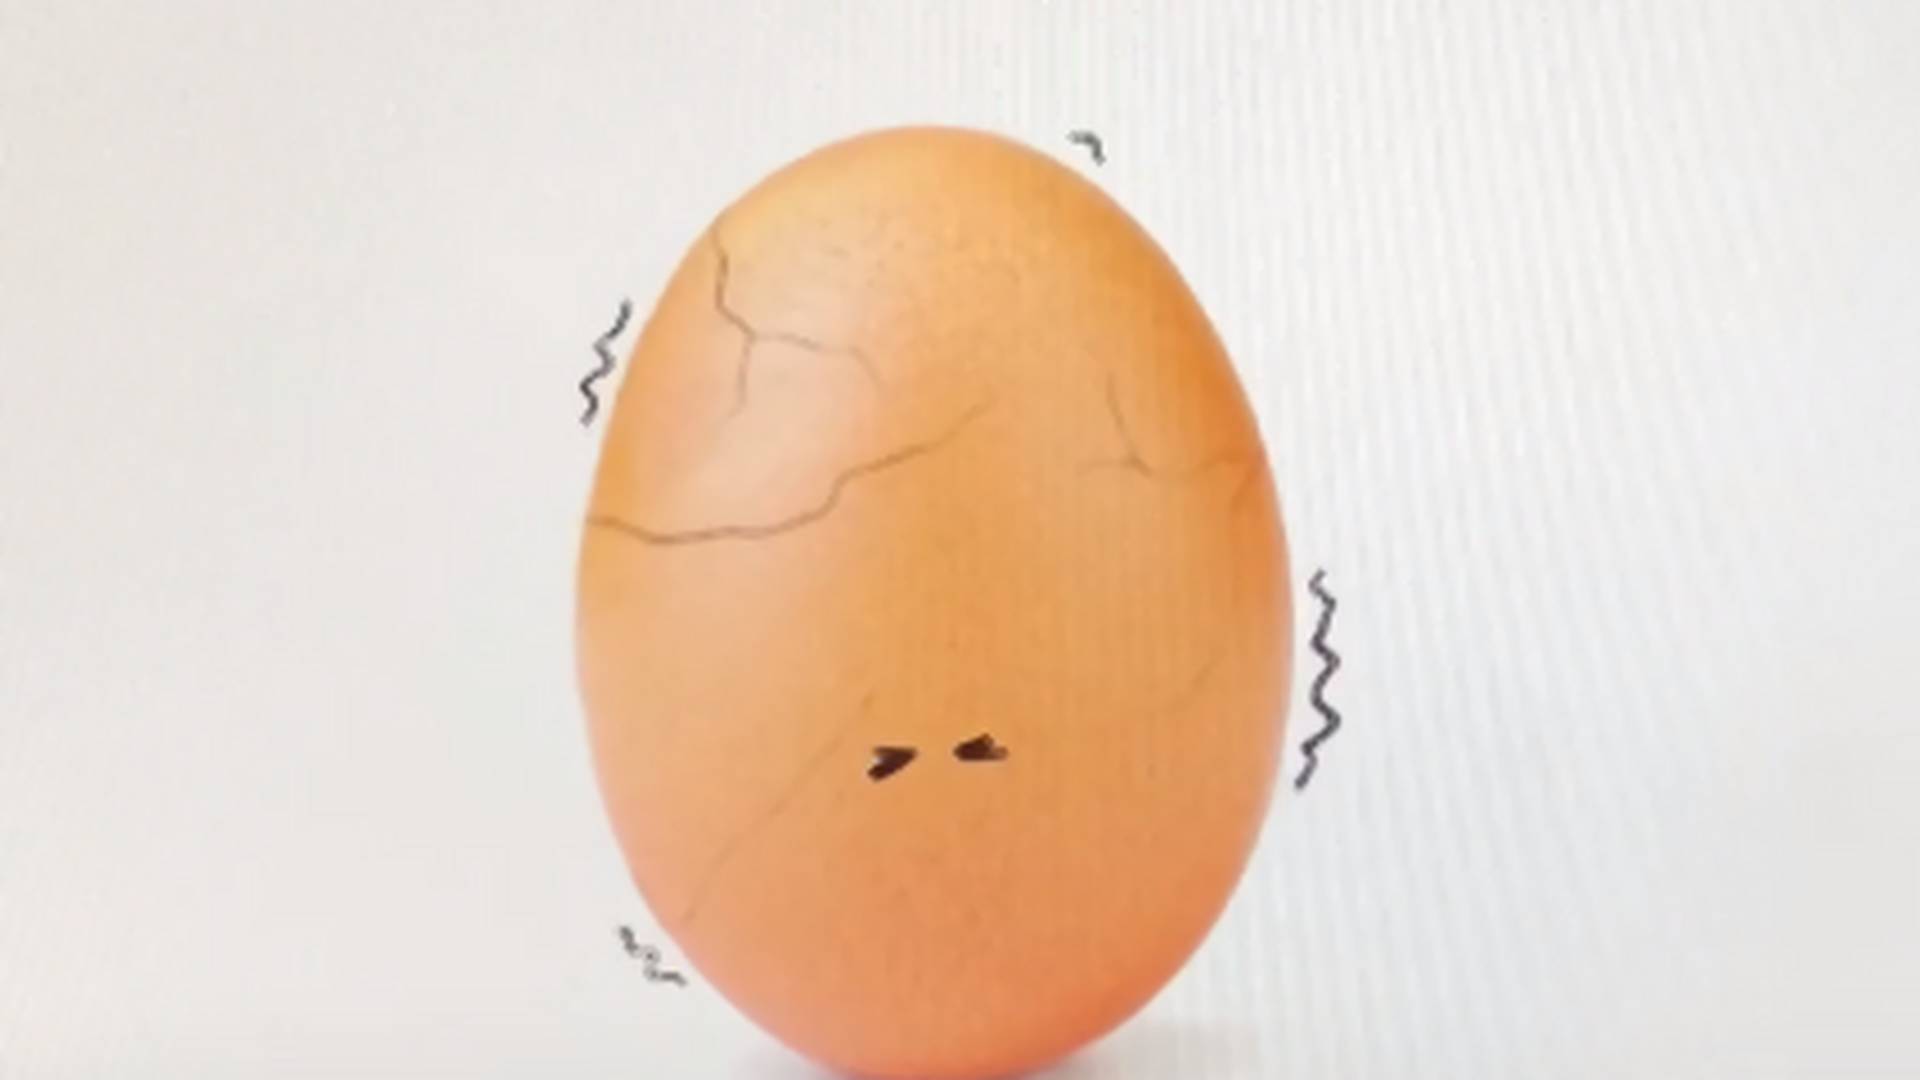 "Ostatnio zacząłem pękać". Instagramowe jajko przemówiło i było czymś więcej niż reklamą